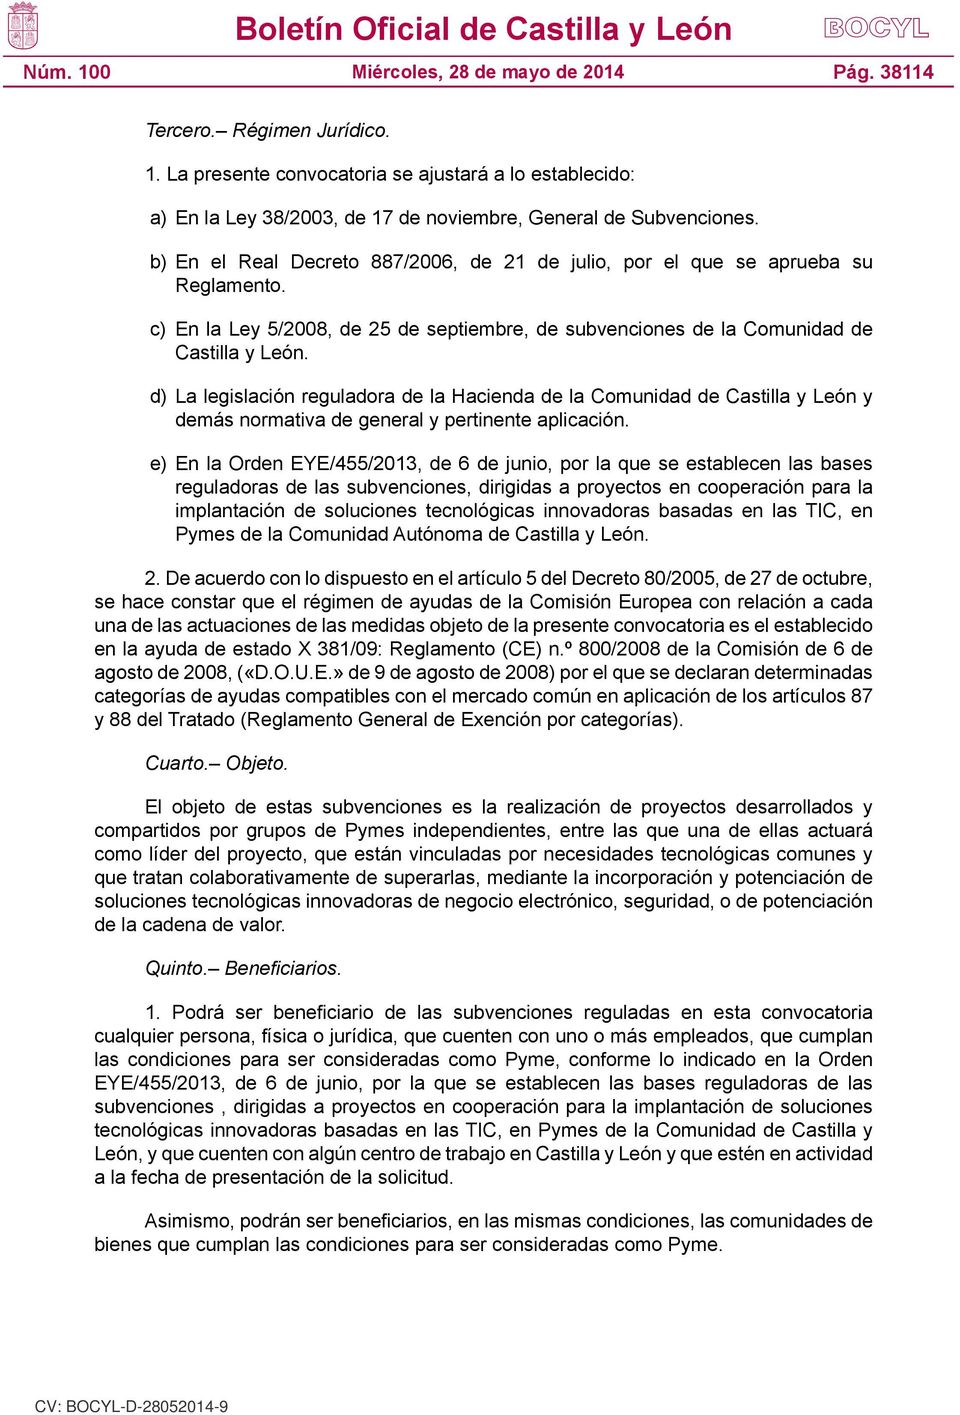 d) La legislación reguladora de la Hacienda de la Comunidad de Castilla y León y demás normativa de general y pertinente aplicación.